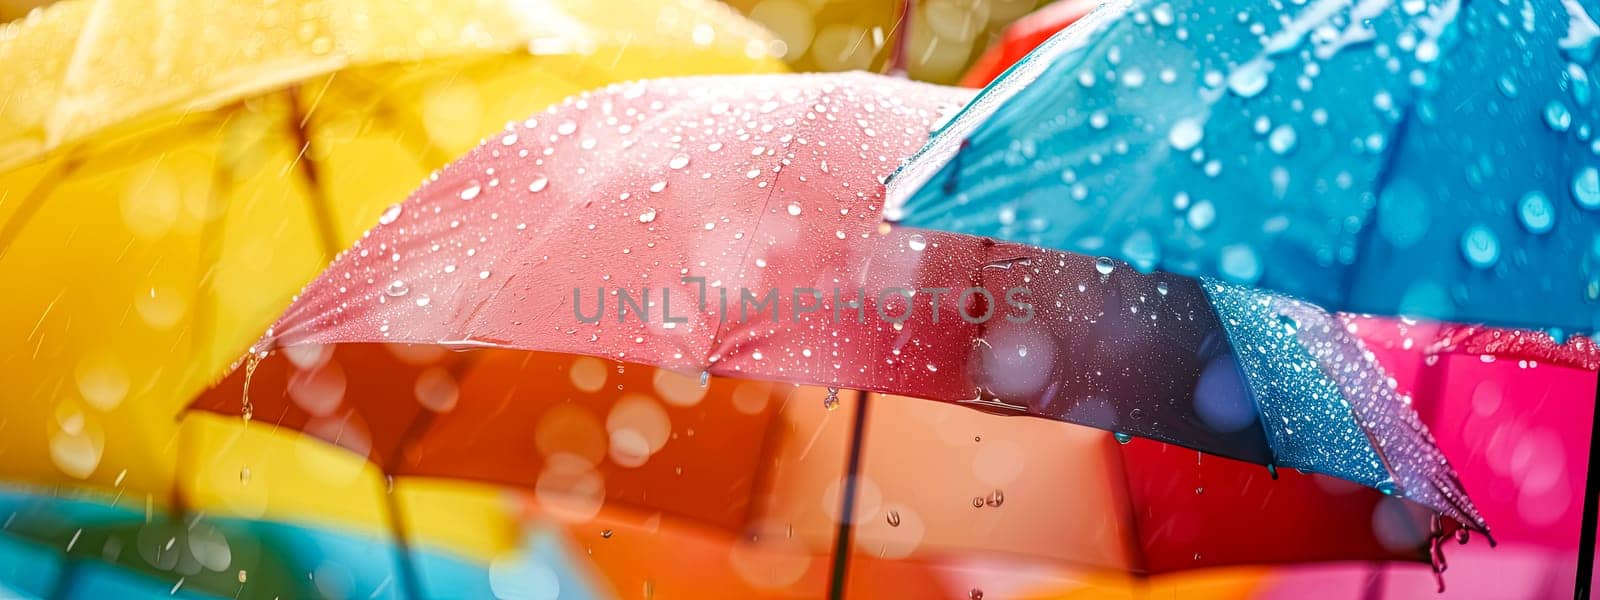 Rainbow Umbrellas with Raindrops by Edophoto